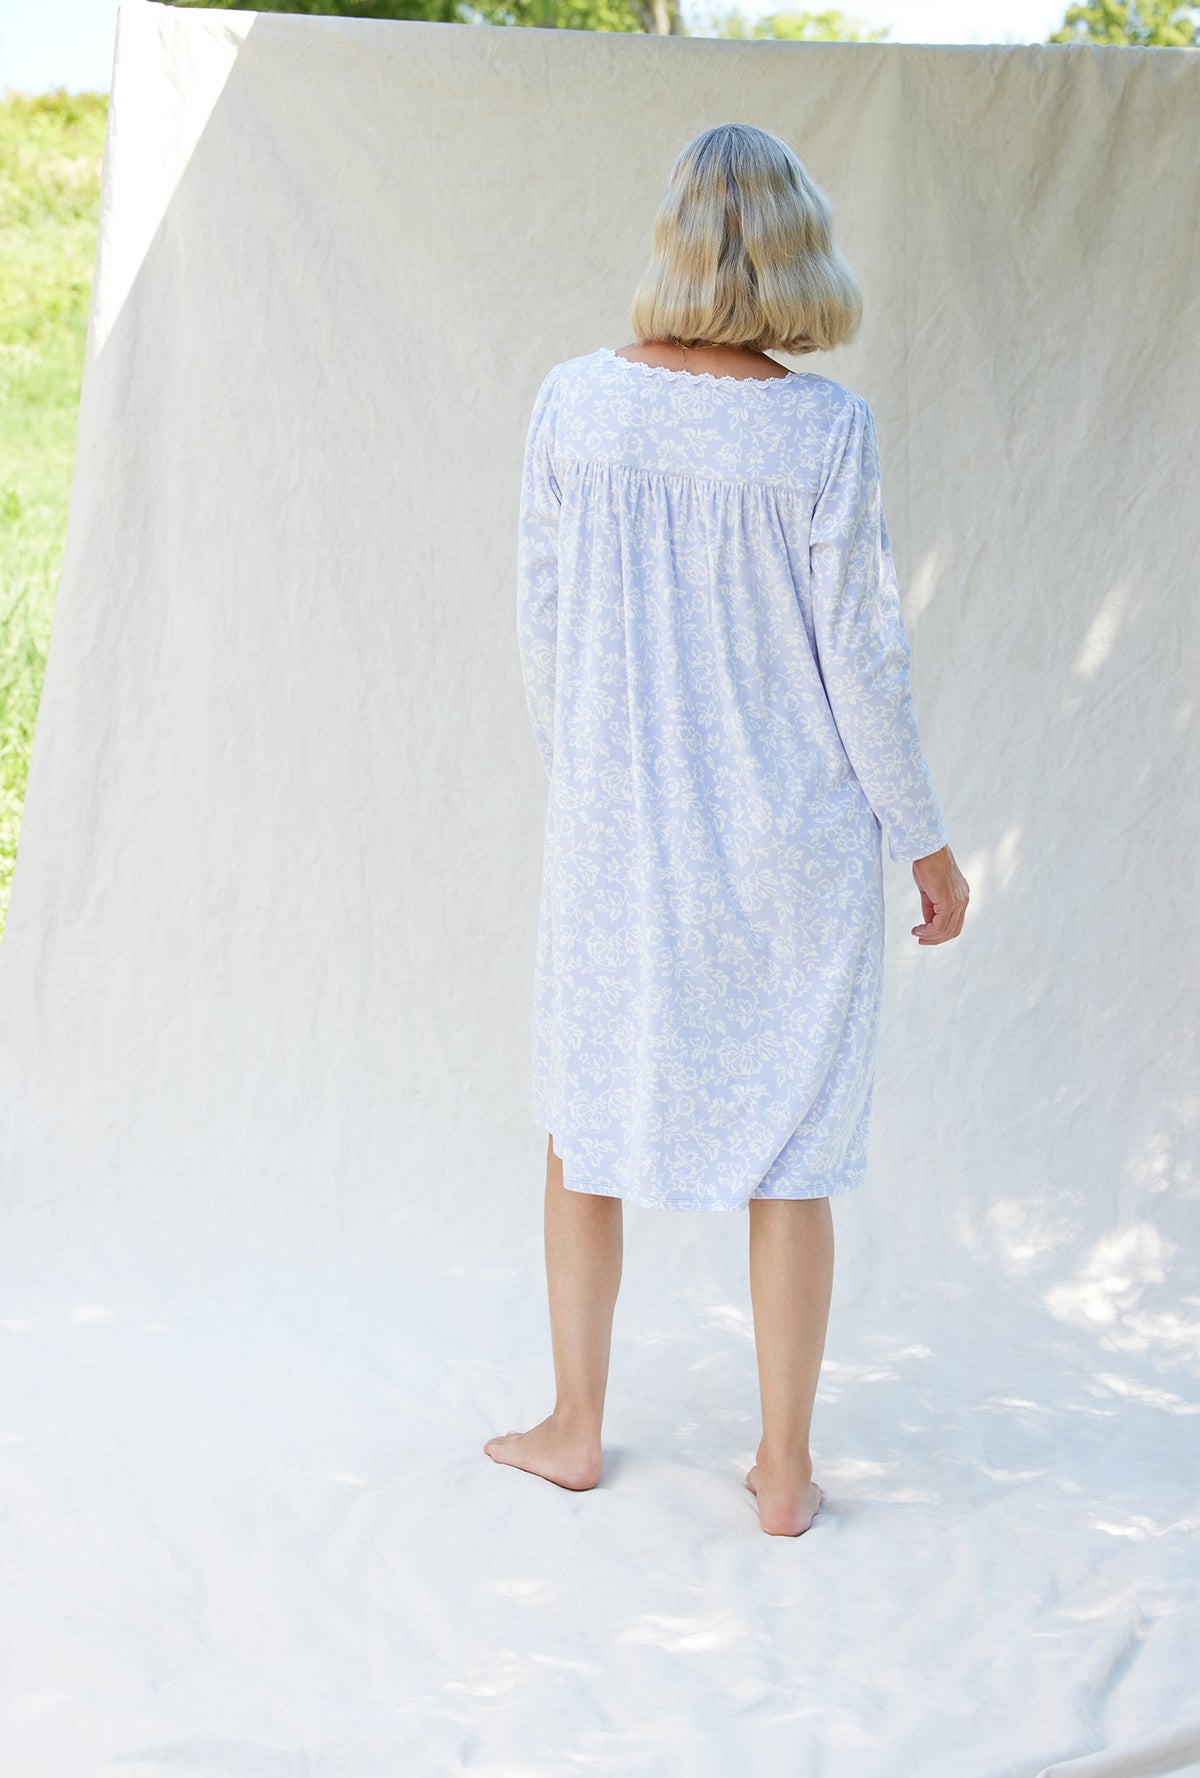 A lady wearing a dream fleece long sleeve waltz nightgown.